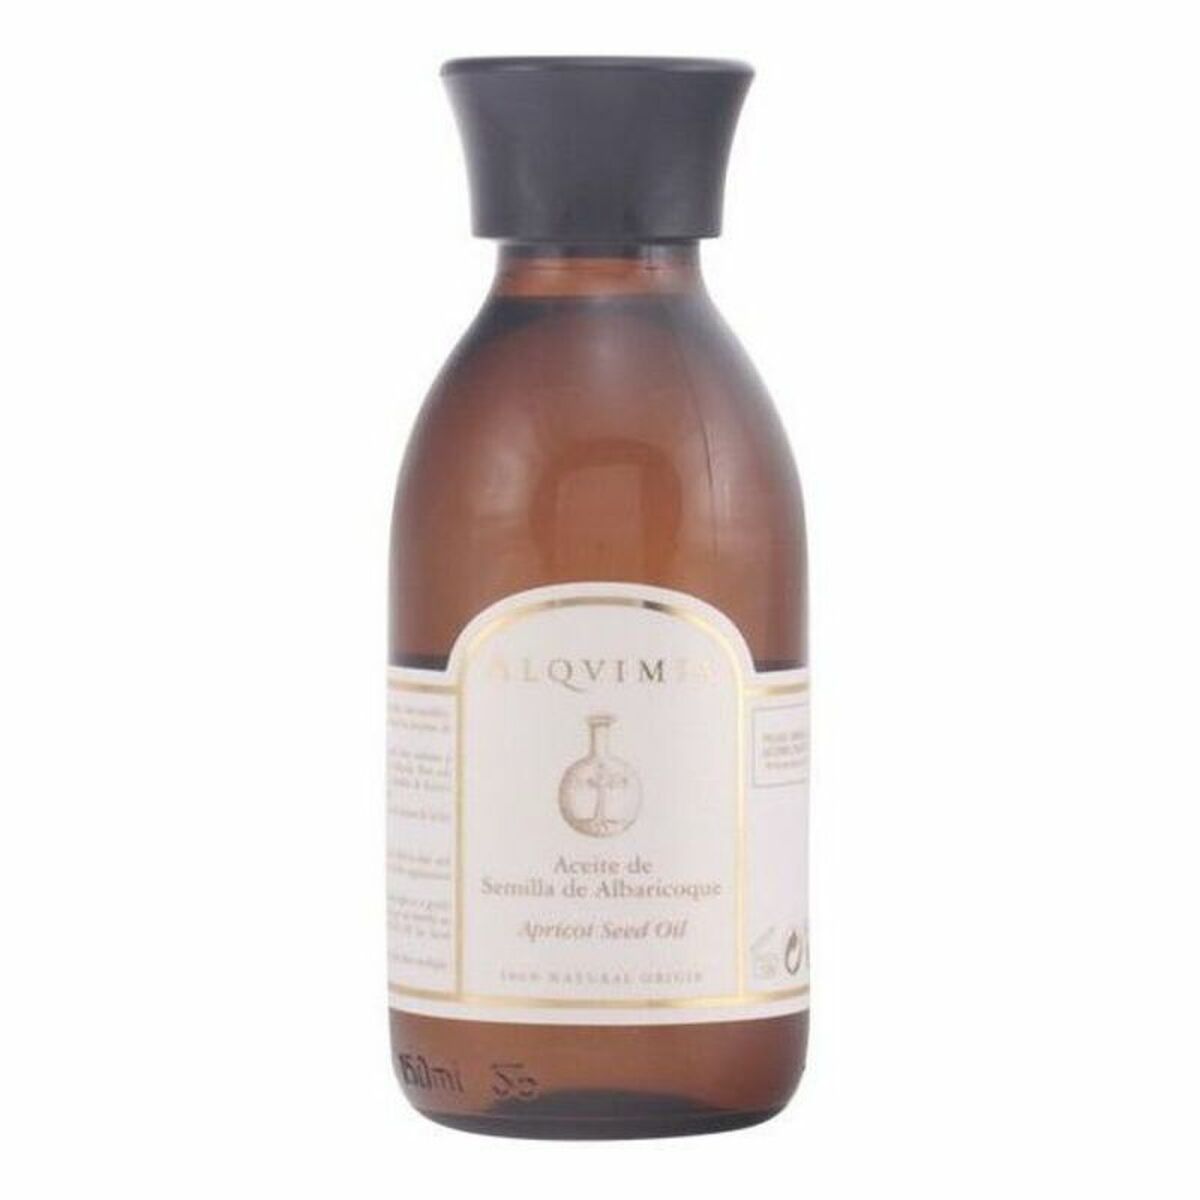 Aceite Corporal Apricot Seed Oil Alqvimia (150 ml)